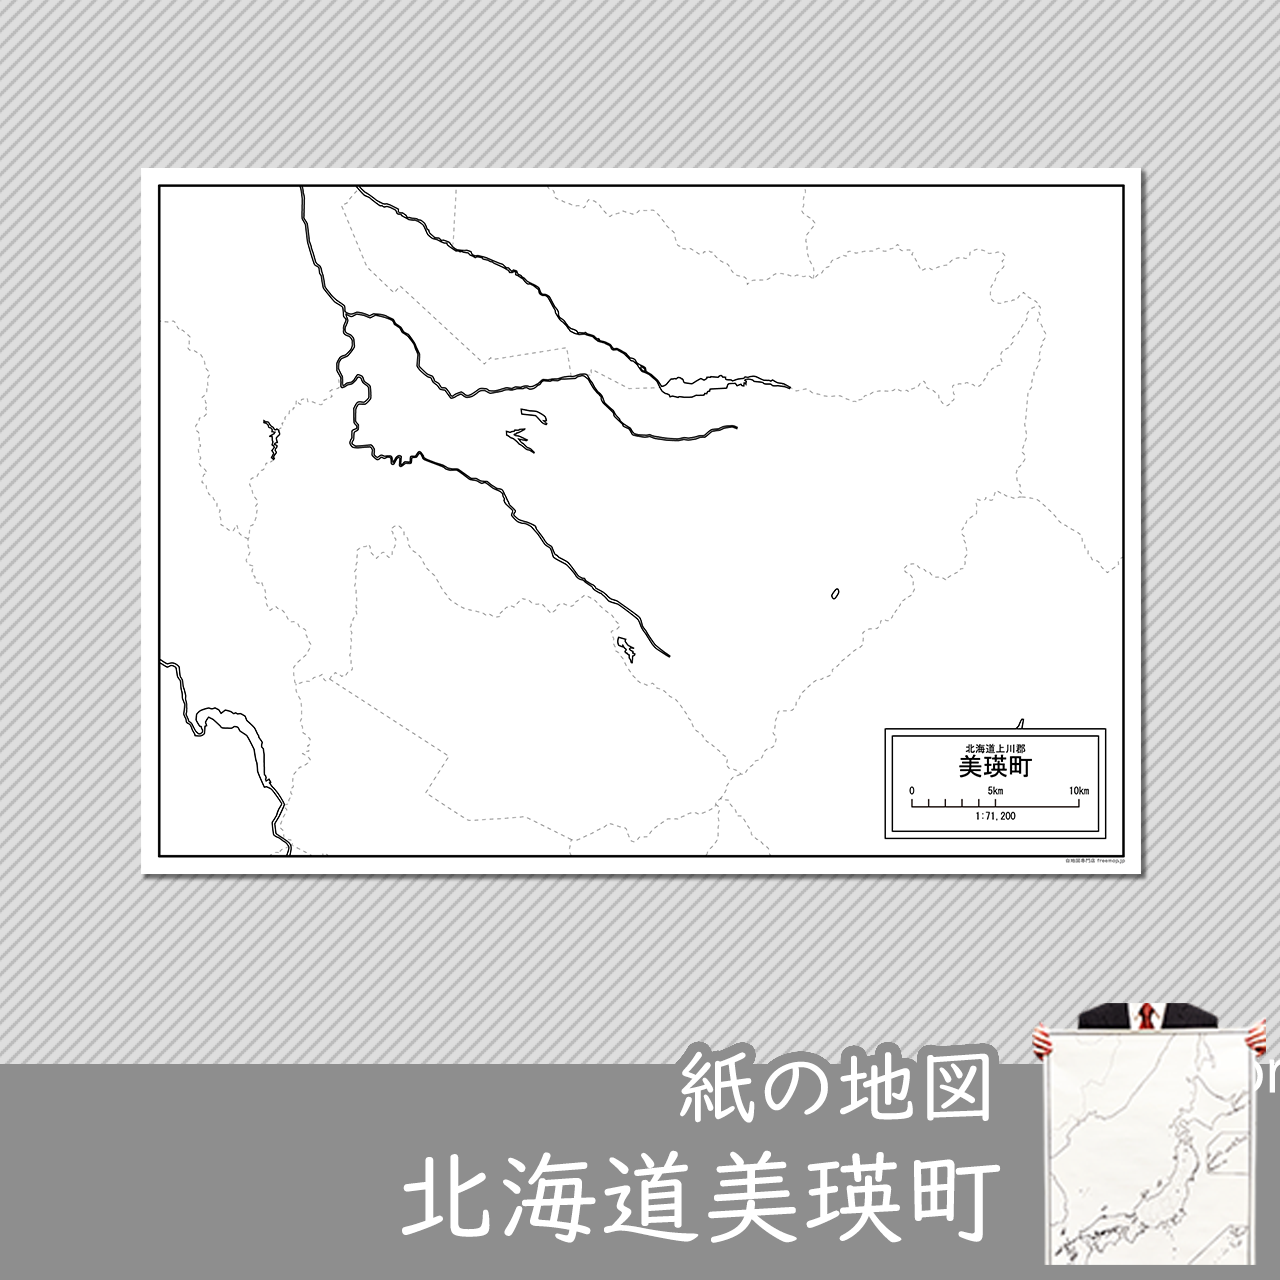 美瑛町の紙の白地図のサムネイル